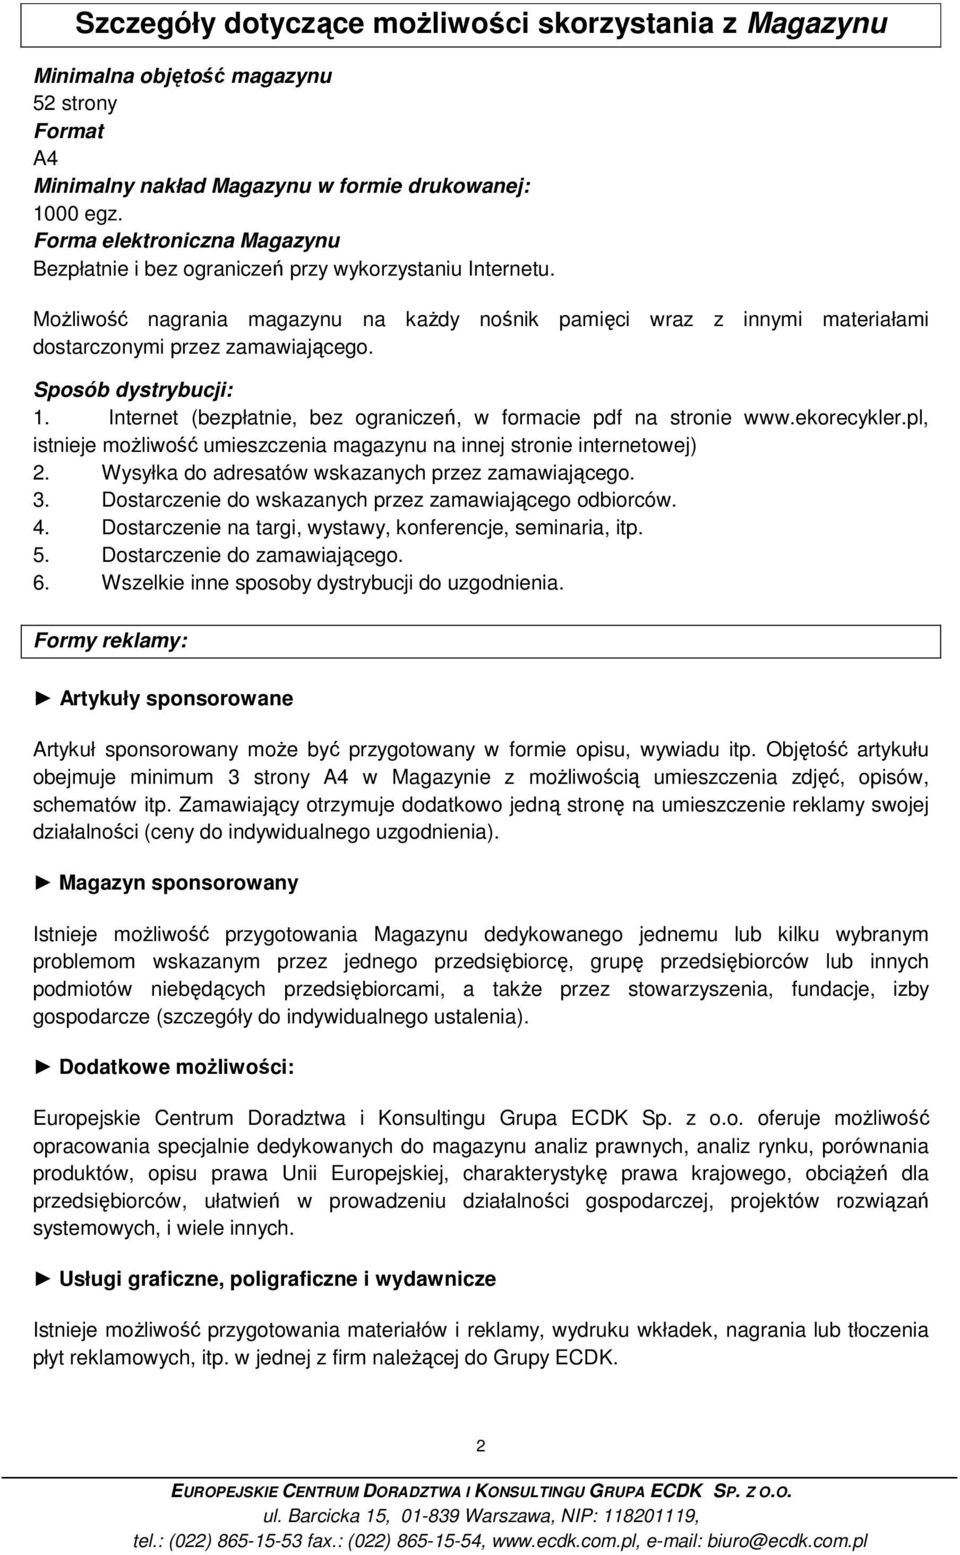 Sposób dystrybucji: 1. Internet (bezpłatnie, bez ograniczeń, w formacie pdf na stronie www.ekorecykler.pl, istnieje moŝliwość umieszczenia magazynu na innej stronie internetowej) 2.